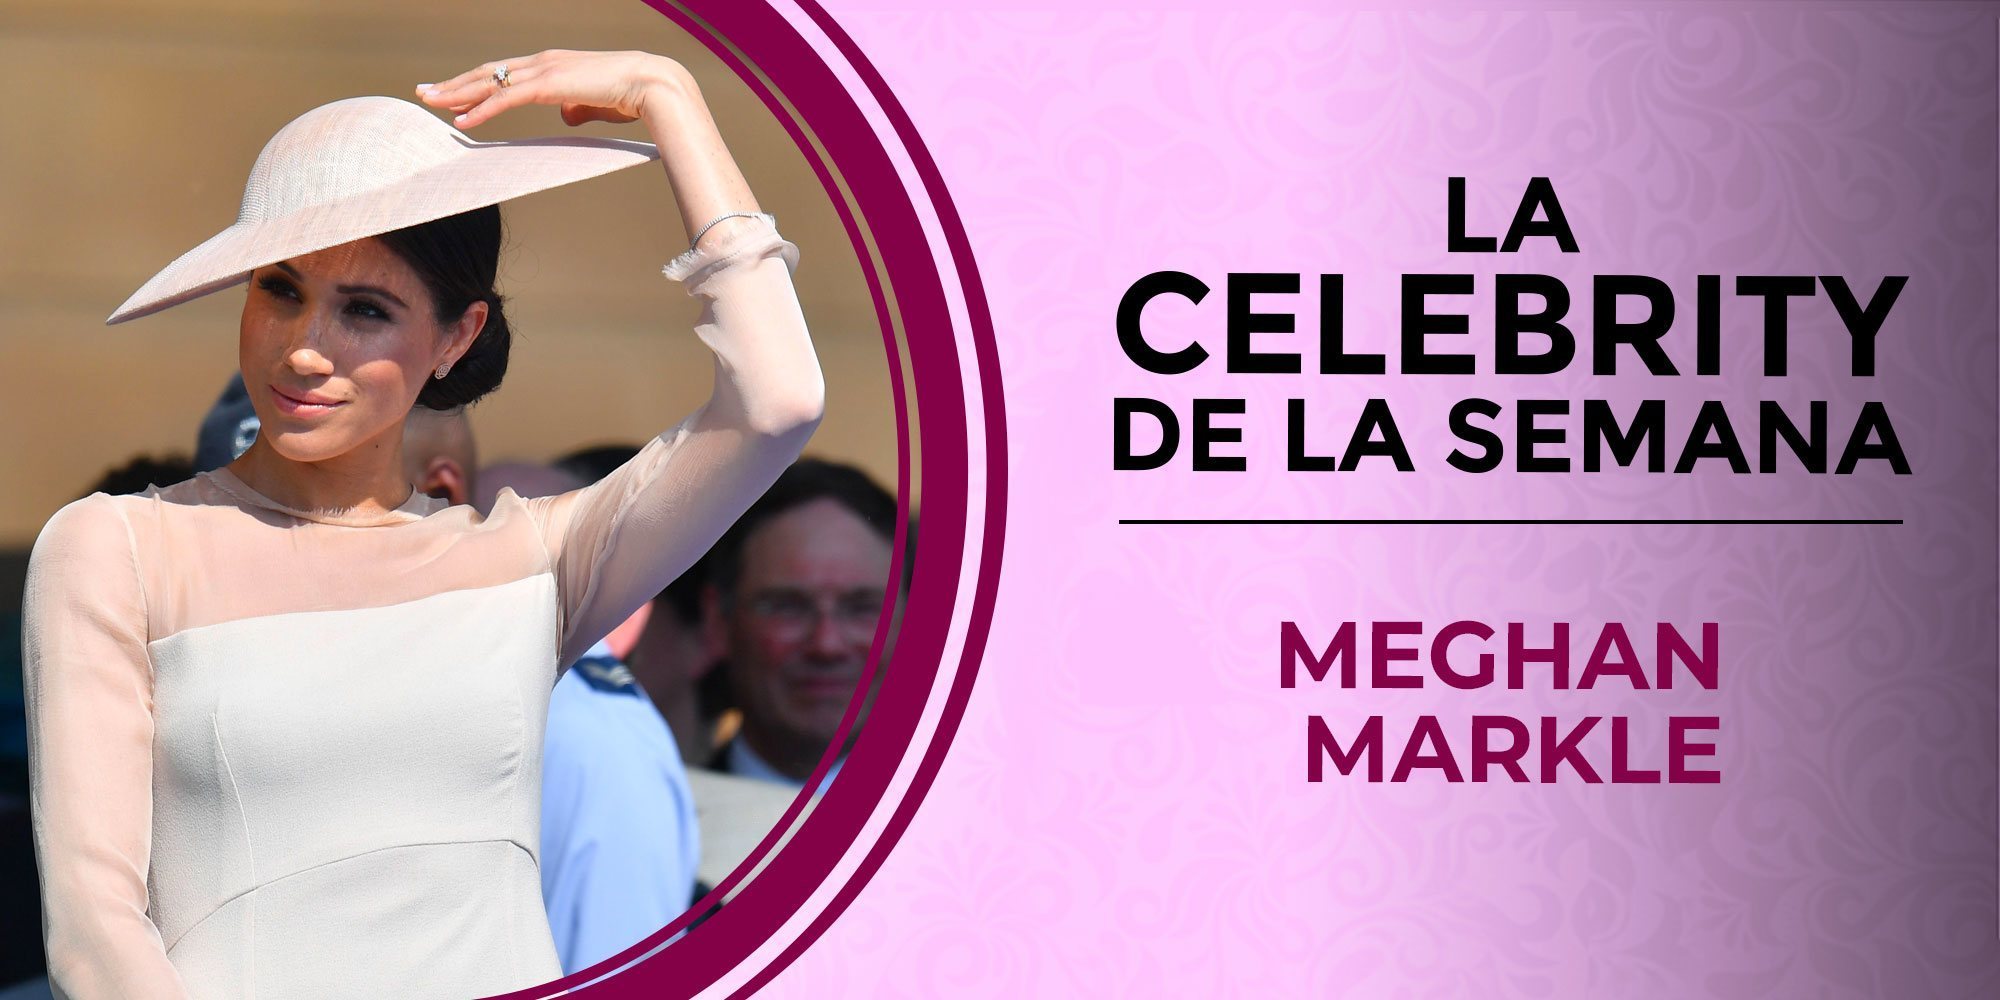 Así ha sido la primera semana de Meghan Markle como Duquesa de Sussex: entre alegrías y disgustos